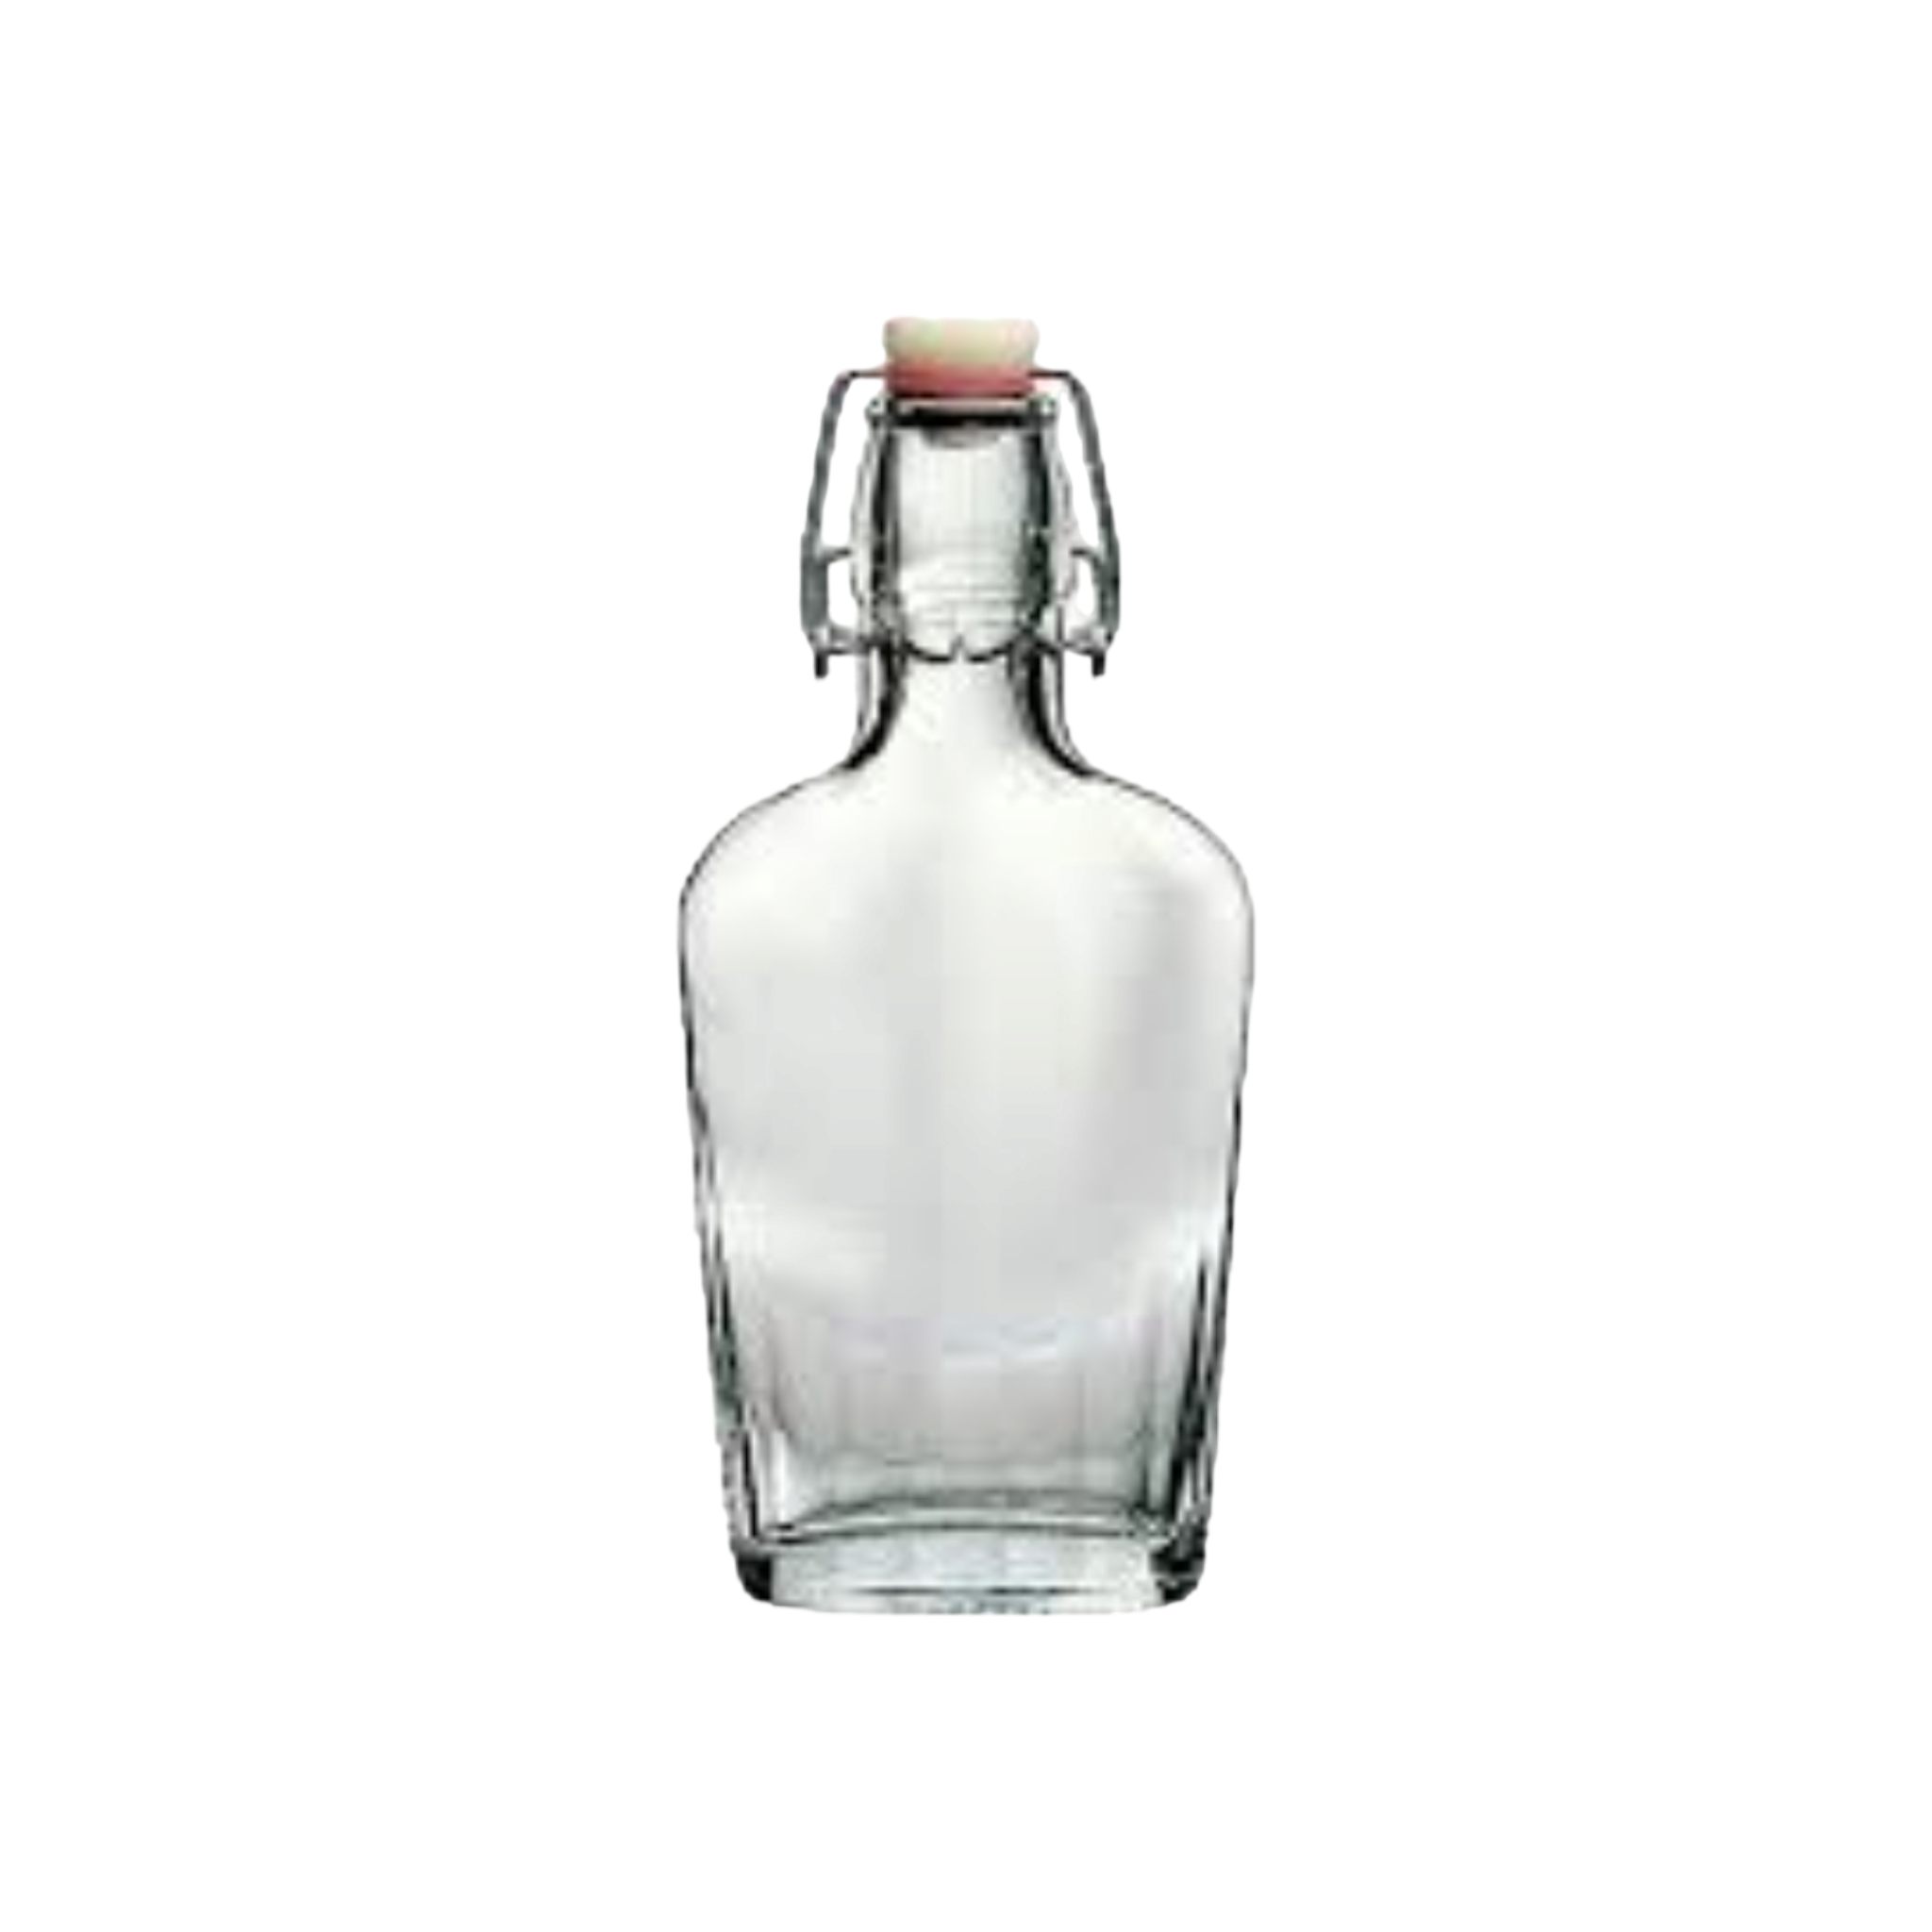 Glass Bottle 200ml Oil Vinegar Fiaschetta Jar with swing Top Lid